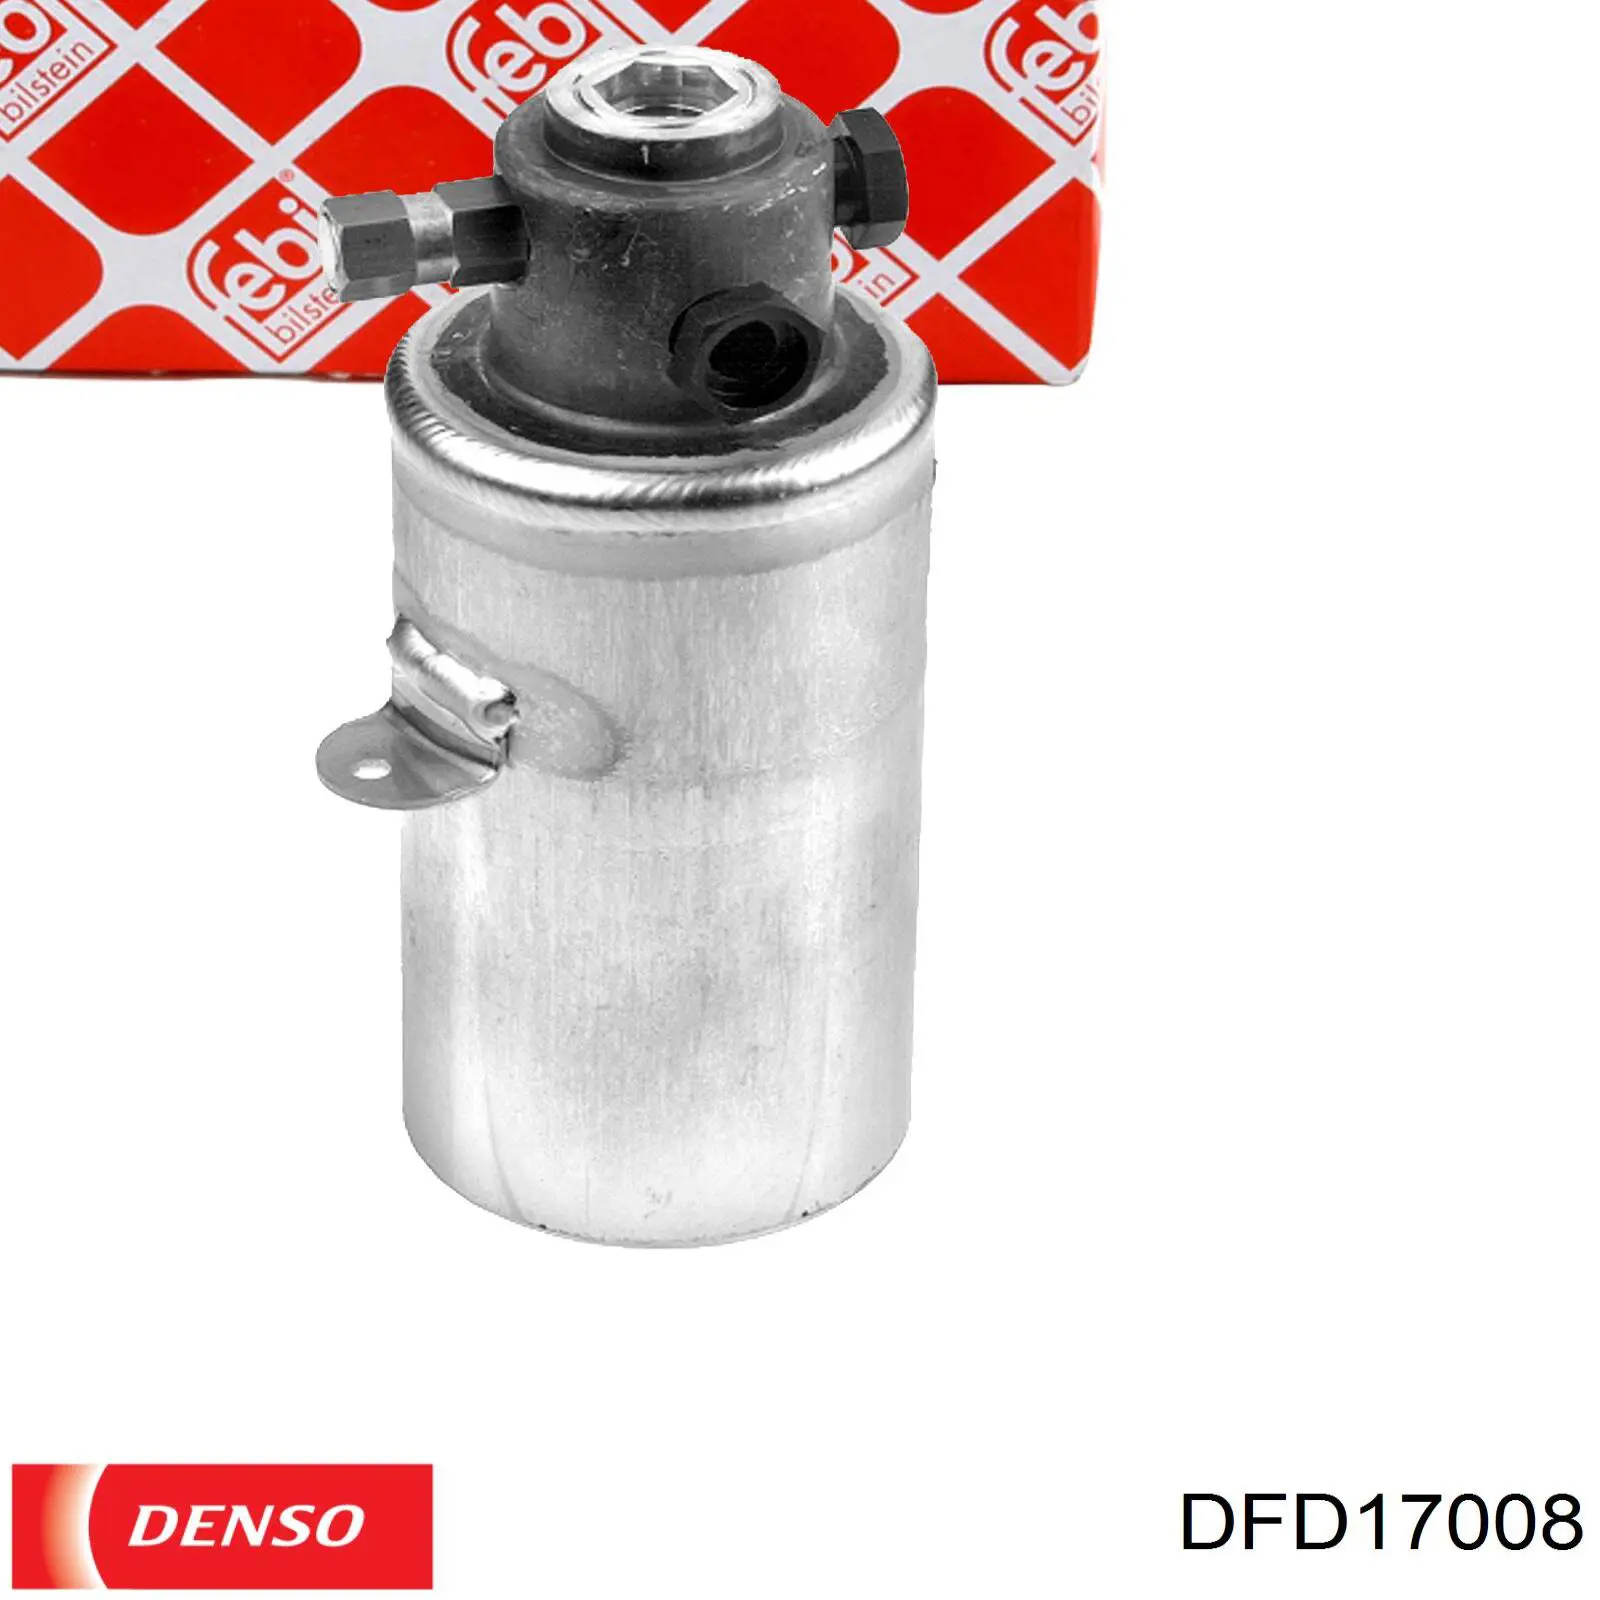 Receptor-secador del aire acondicionado DFD17008 Denso